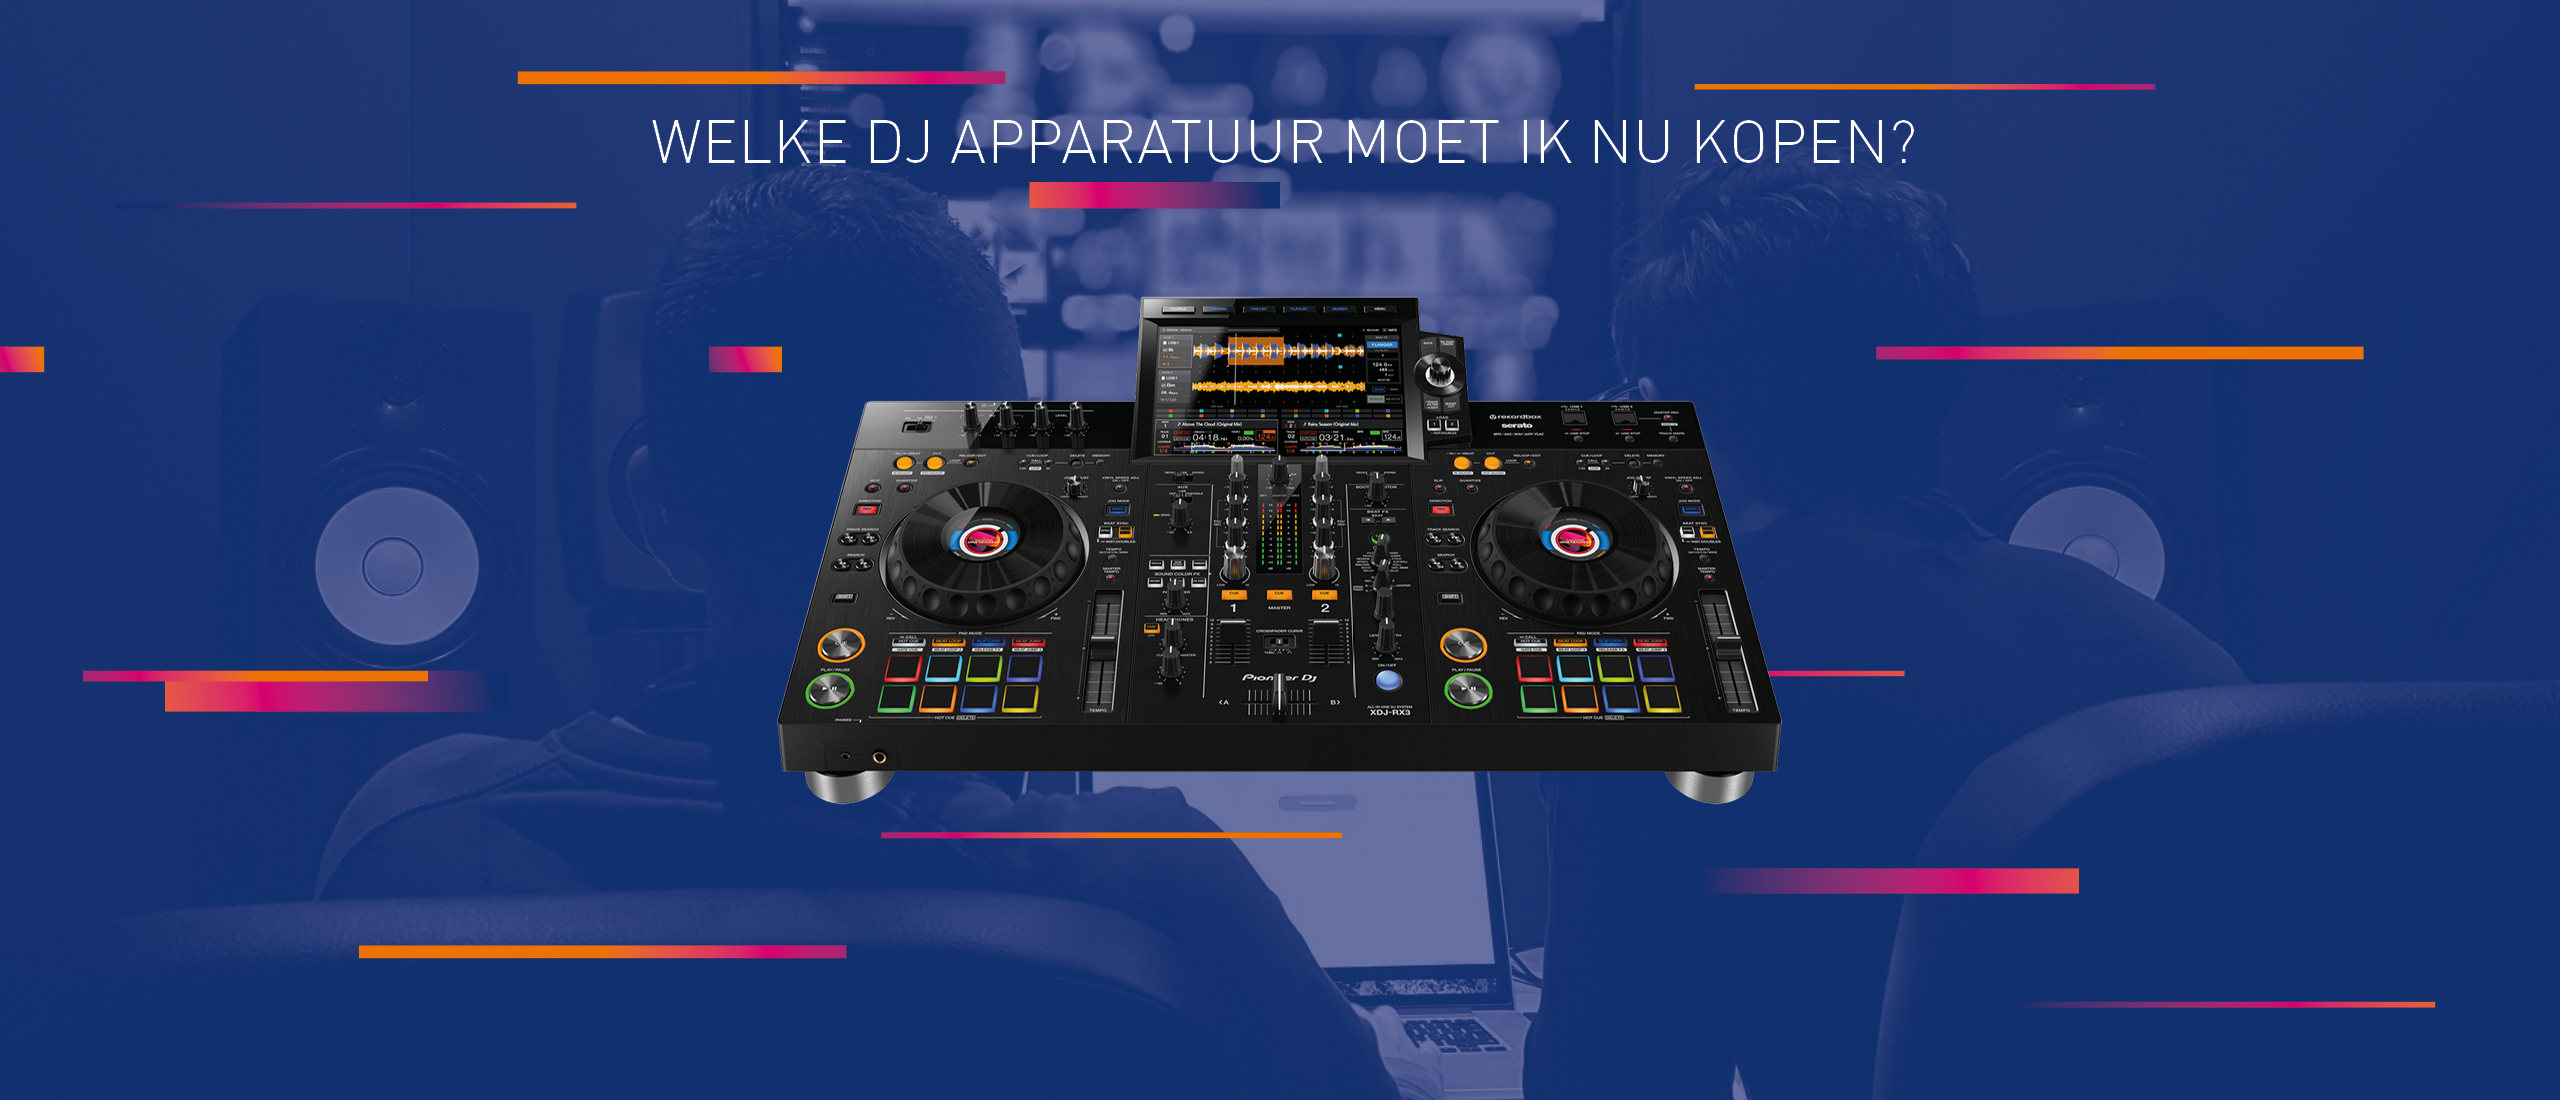 Welke DJ apparatuur moet ik nu kopen?